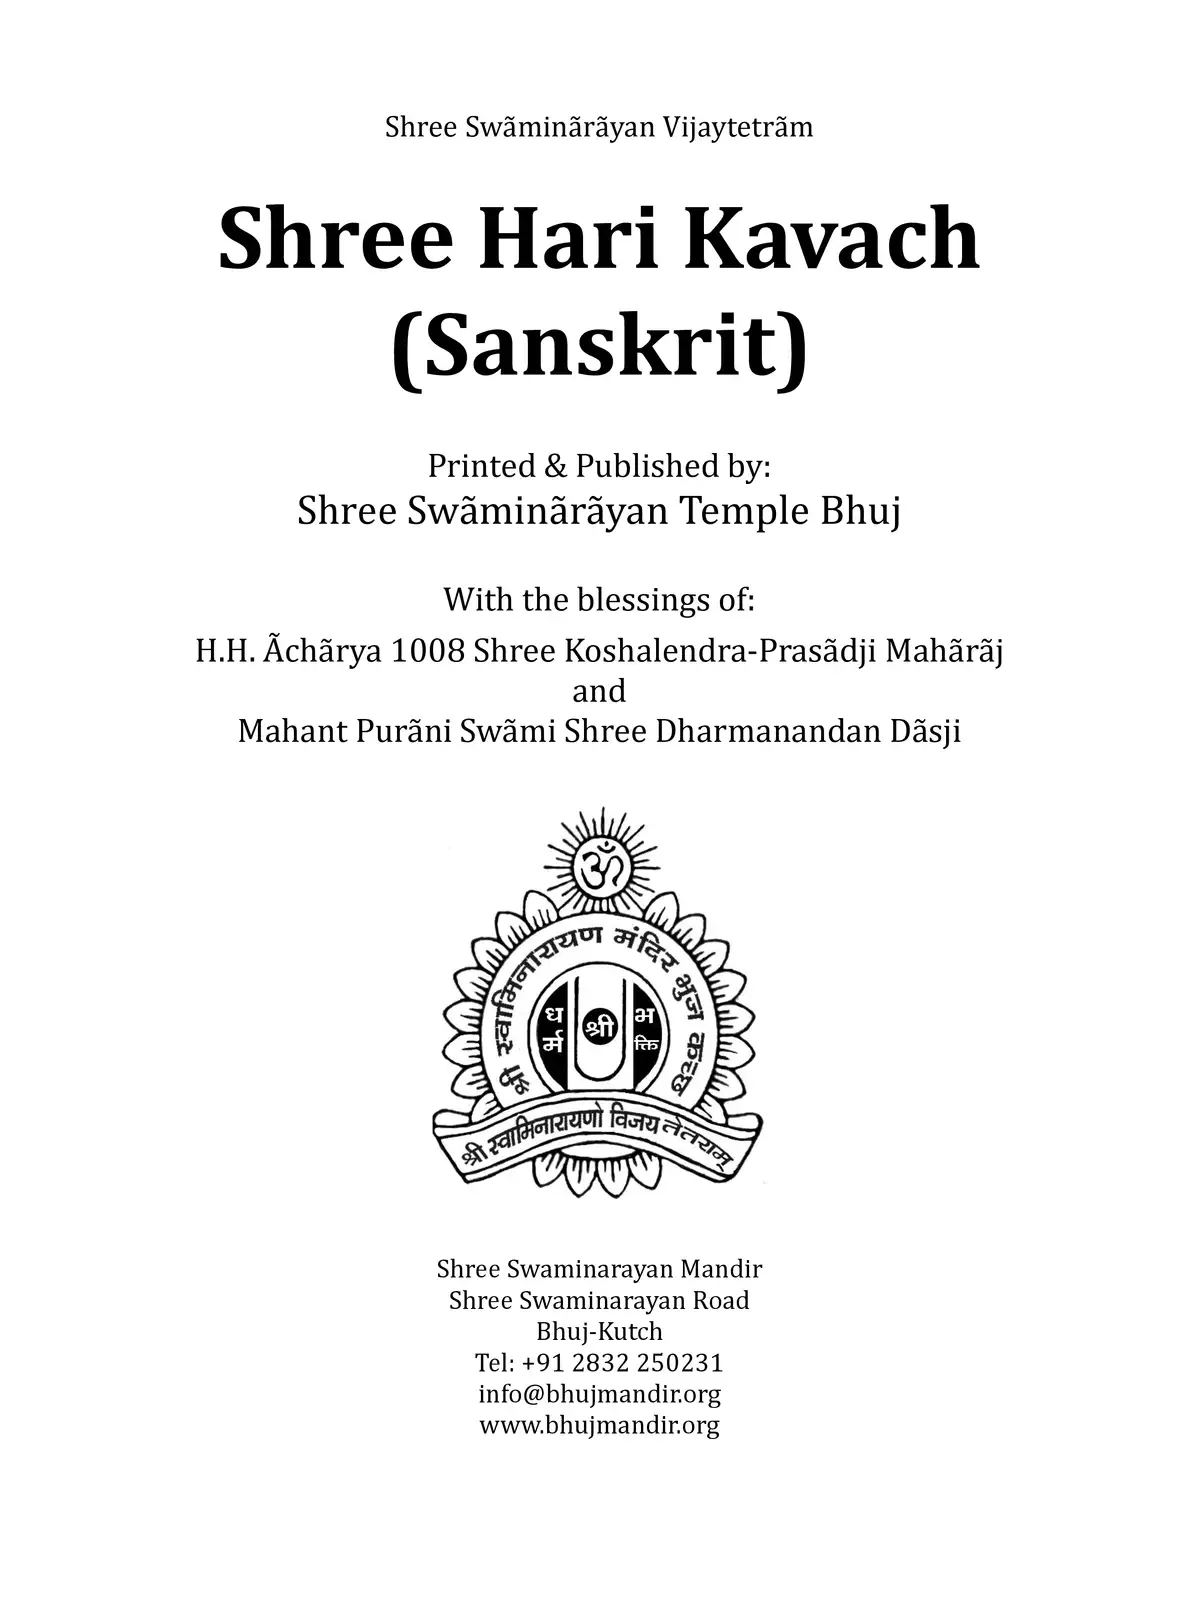 Shree Hari Kavach